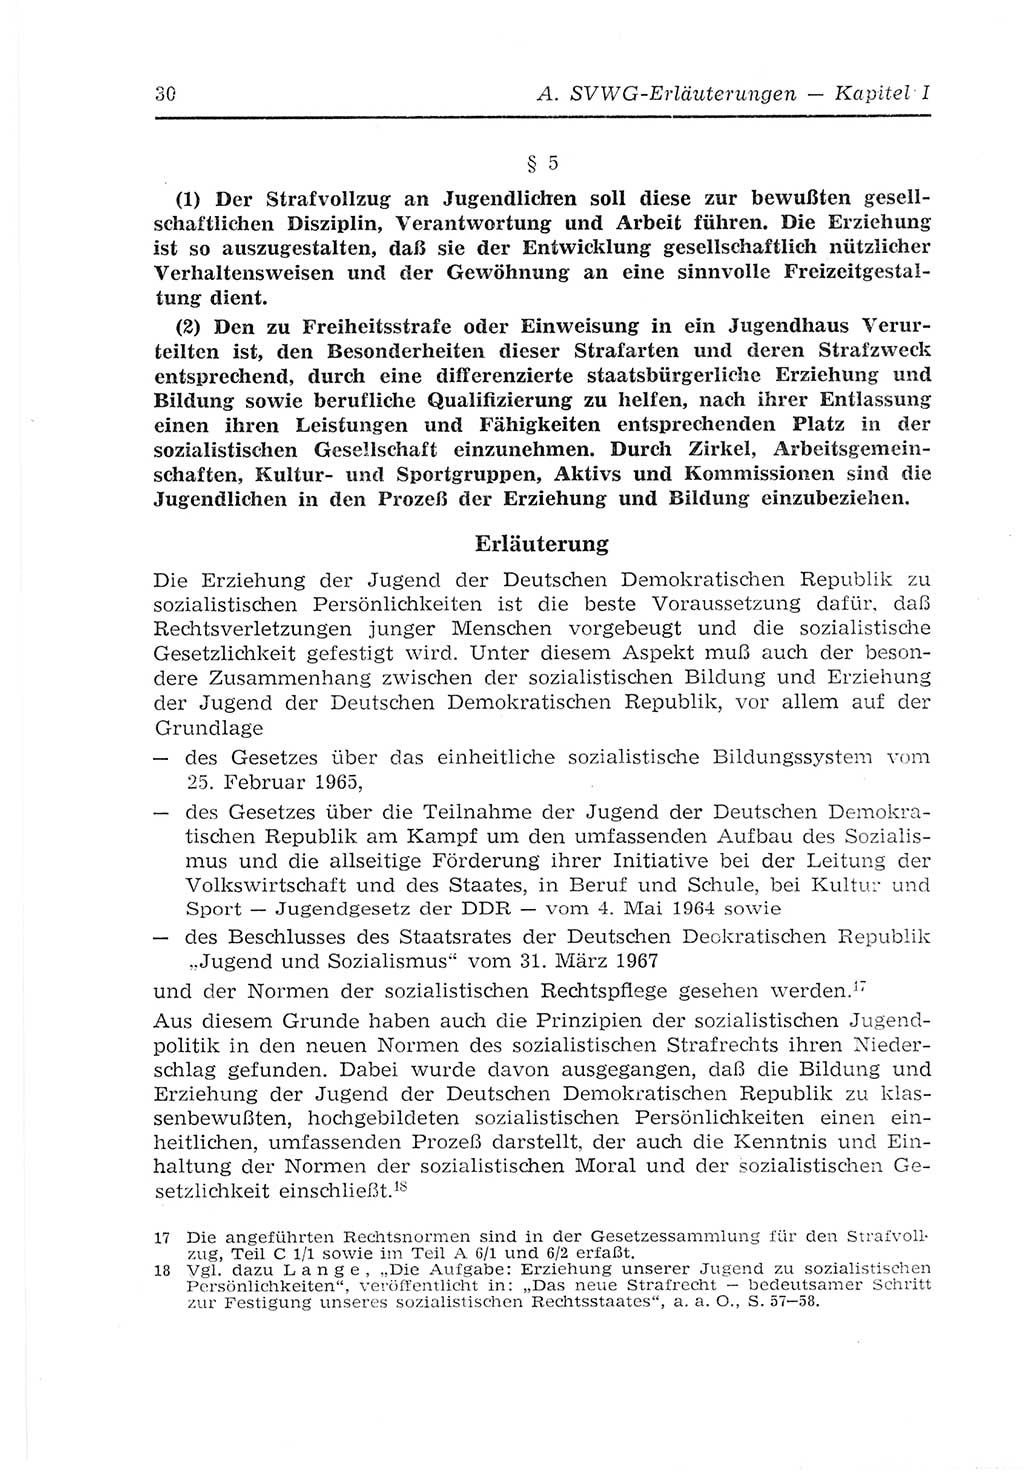 Strafvollzugs- und Wiedereingliederungsgesetz (SVWG) der Deutschen Demokratischen Republik (DDR) 1968, Seite 30 (SVWG DDR 1968, S. 30)